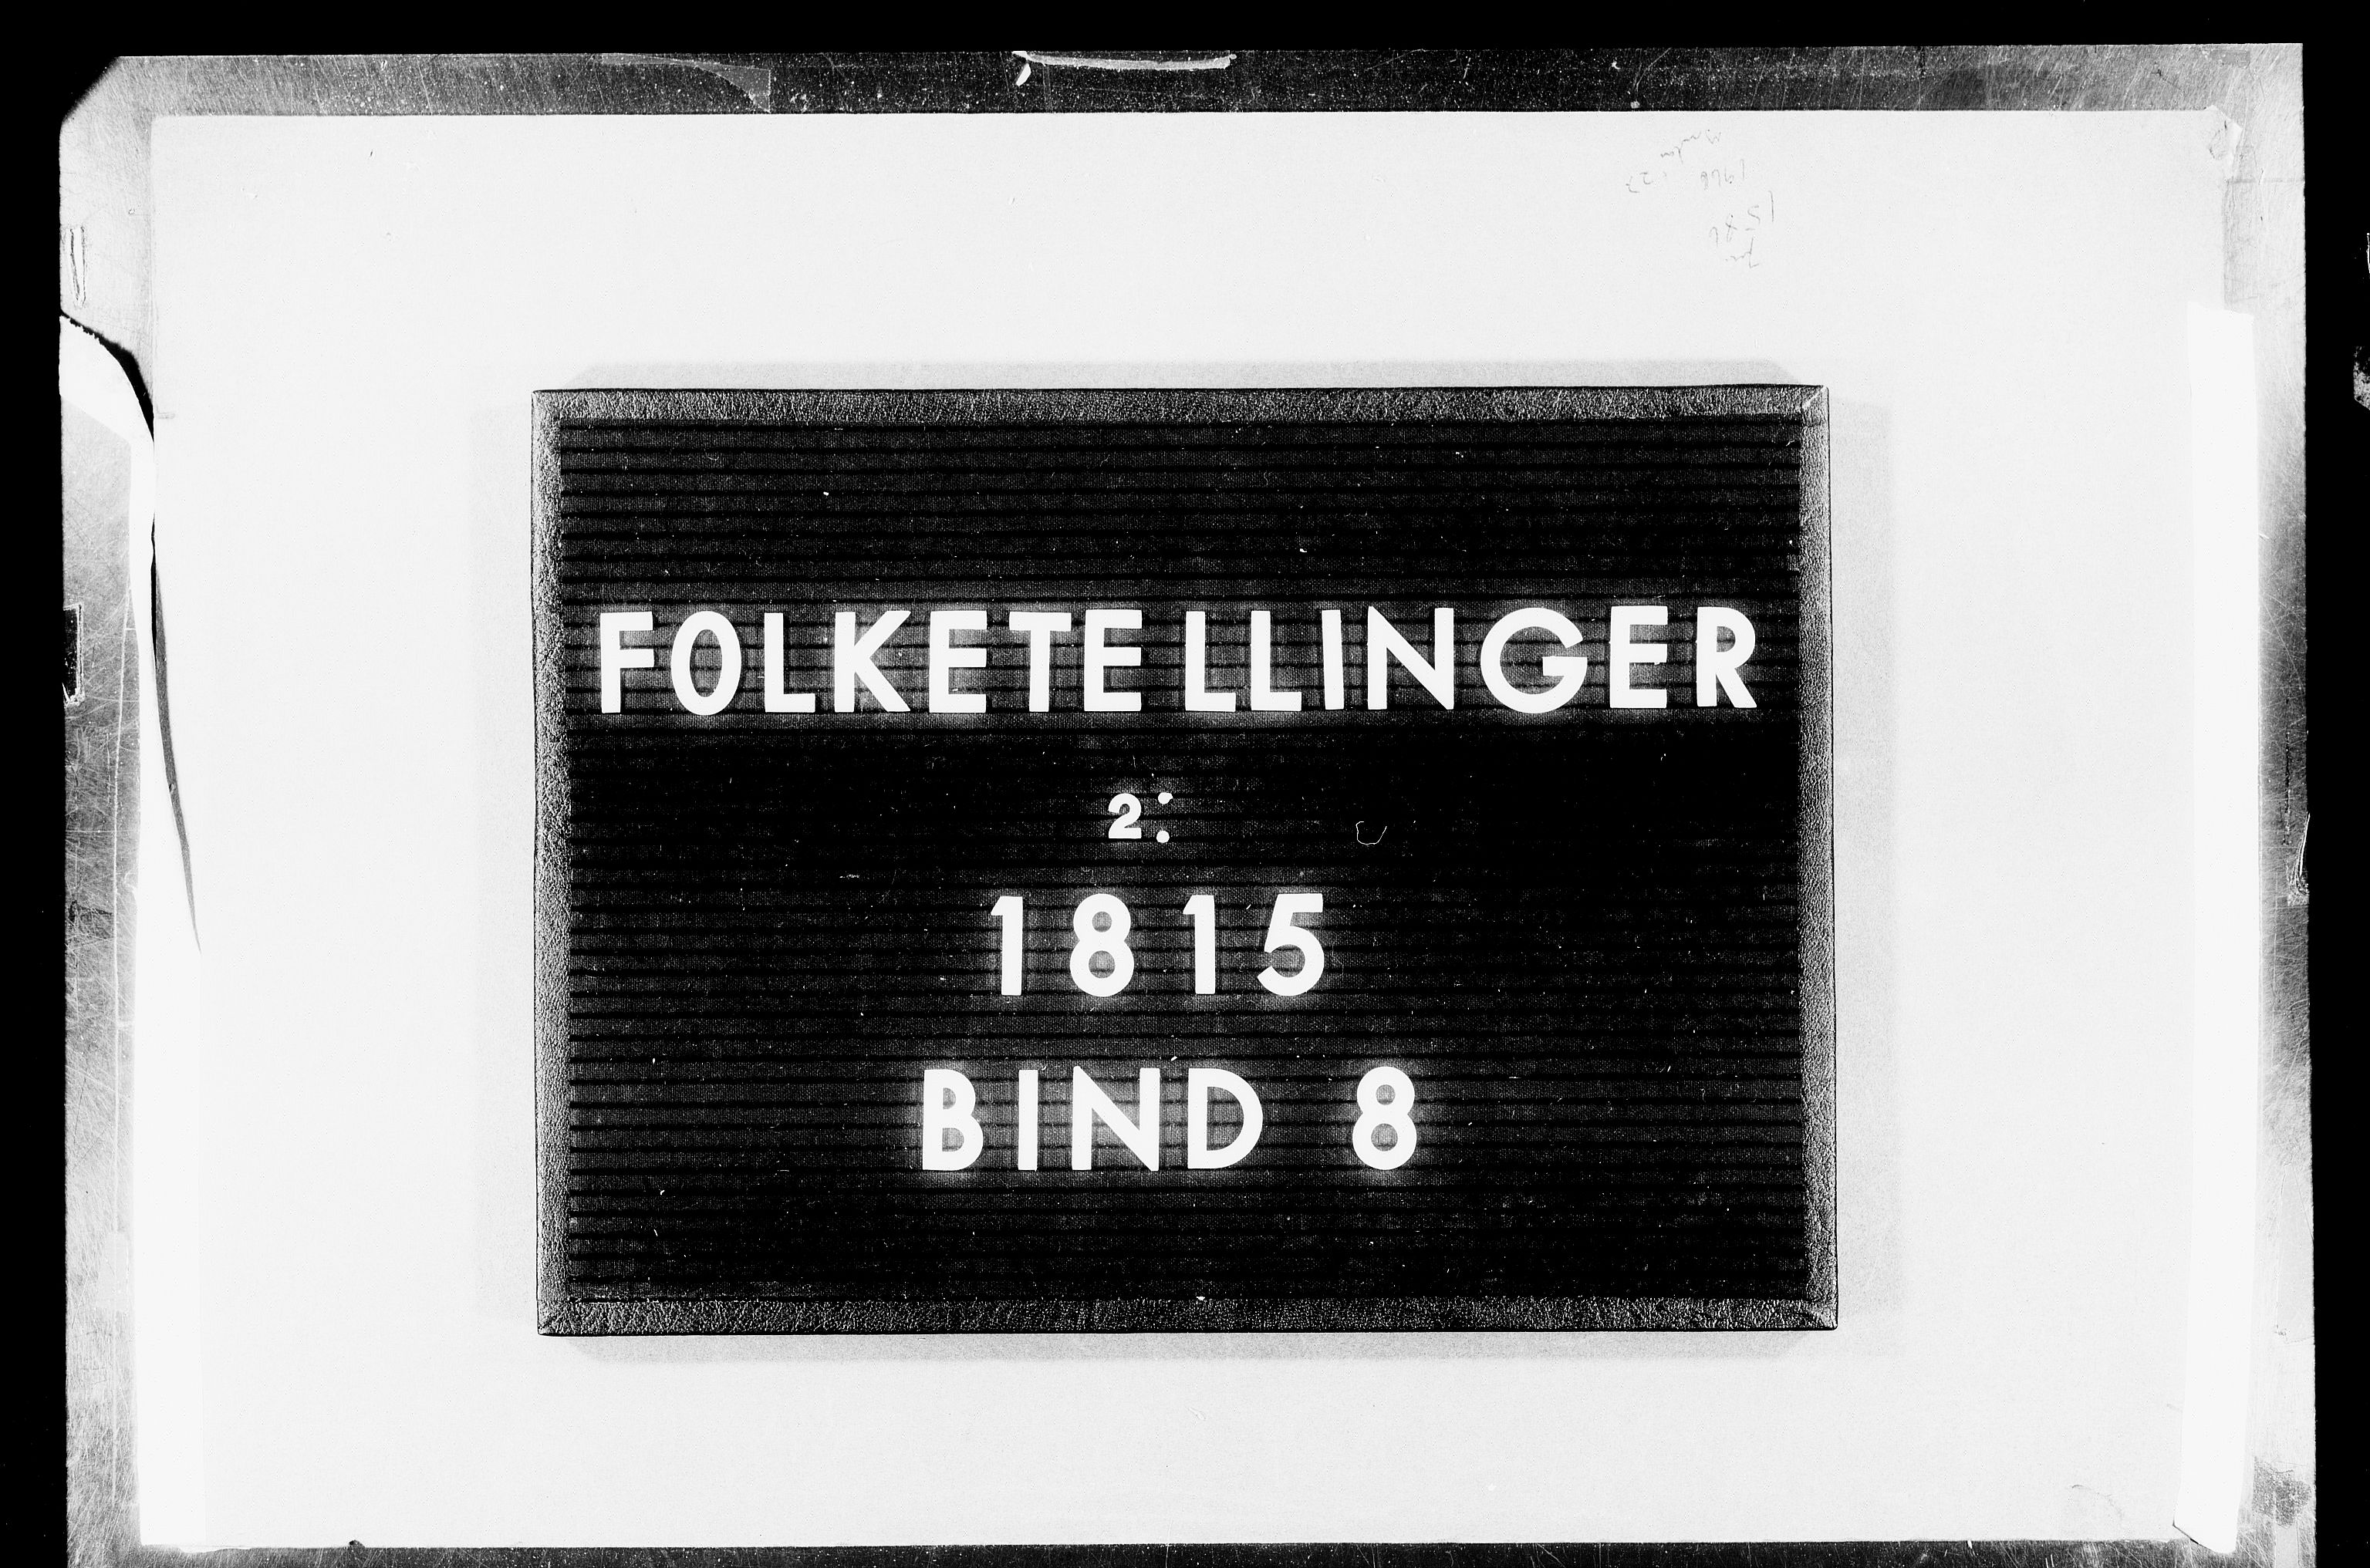 RA, Folketellingen 1815, bind 8: Folkemengdens bevegelse i Tromsø stift og byene, 1815